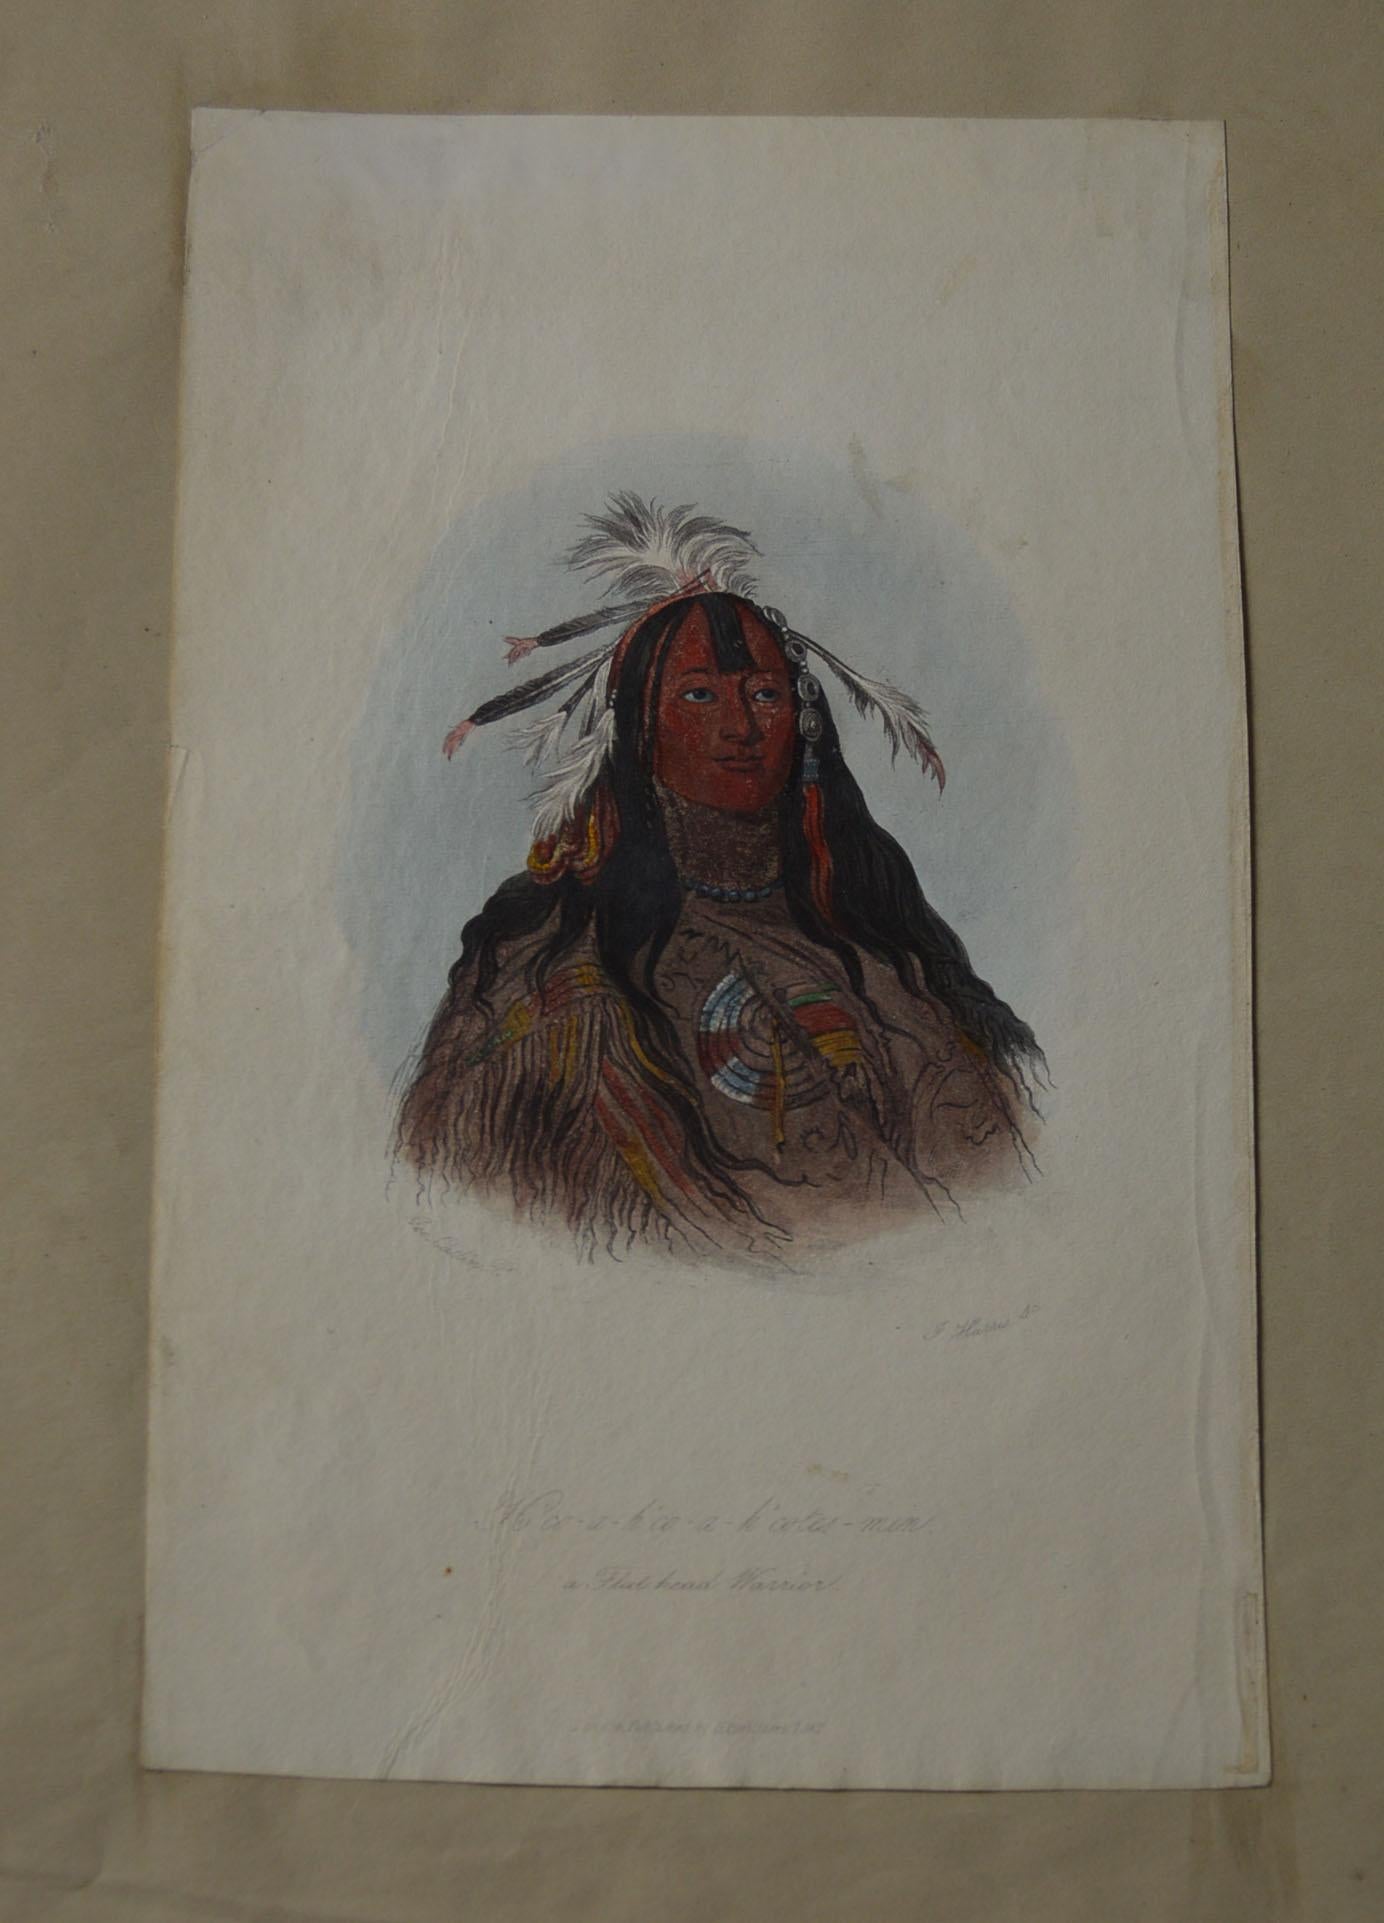 Antike farbige Lithographie Druck Native American Flachkopf-Krieger 1842
Flachkopfkrieger der amerikanischen Ureinwohner 